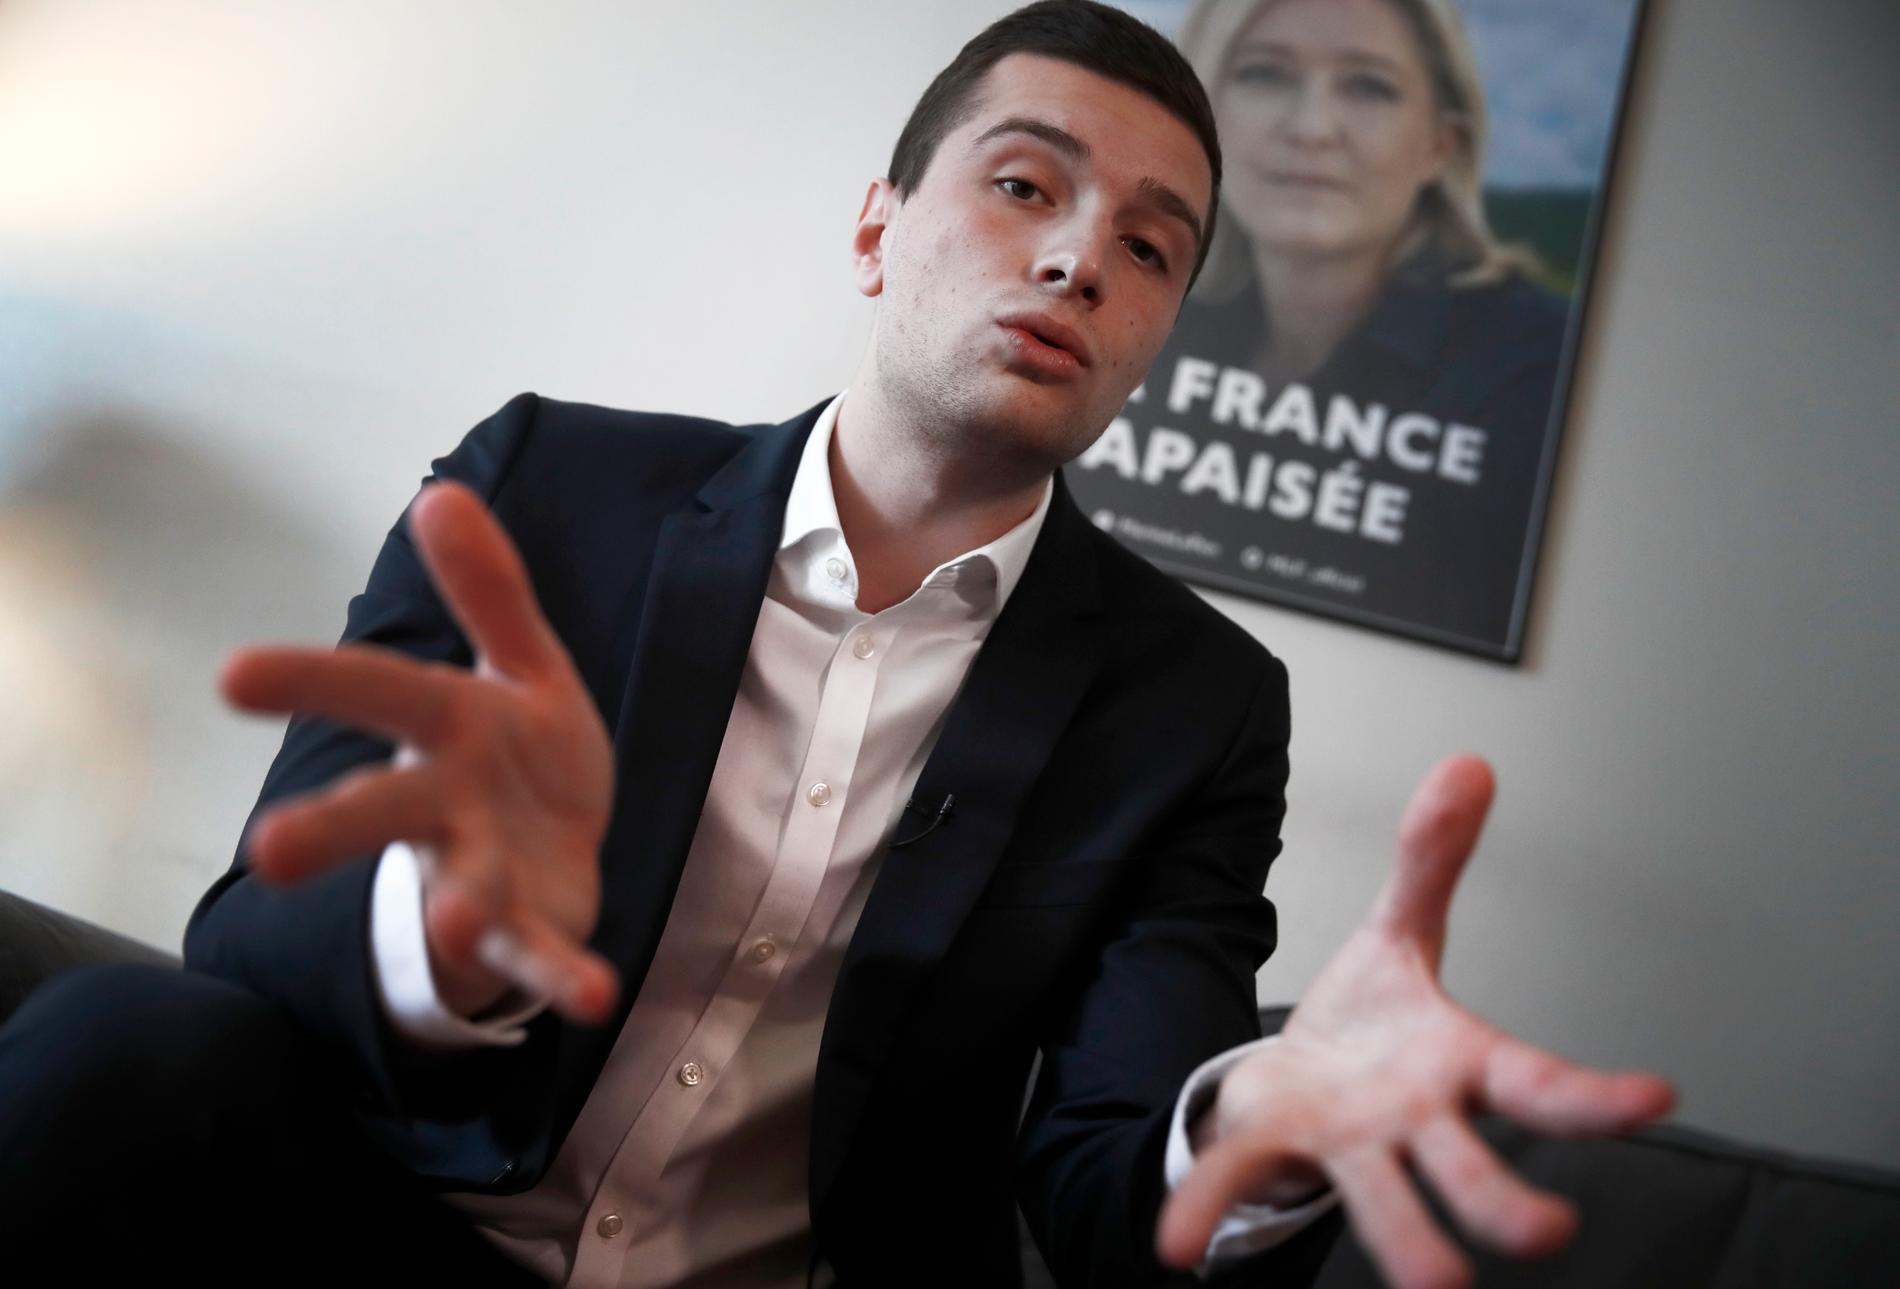 23-årige Jordan Bardella är frontfigur för franska Nationell samling (tidigare Nationella fronten) i årets EU-val. Arkivfoto.